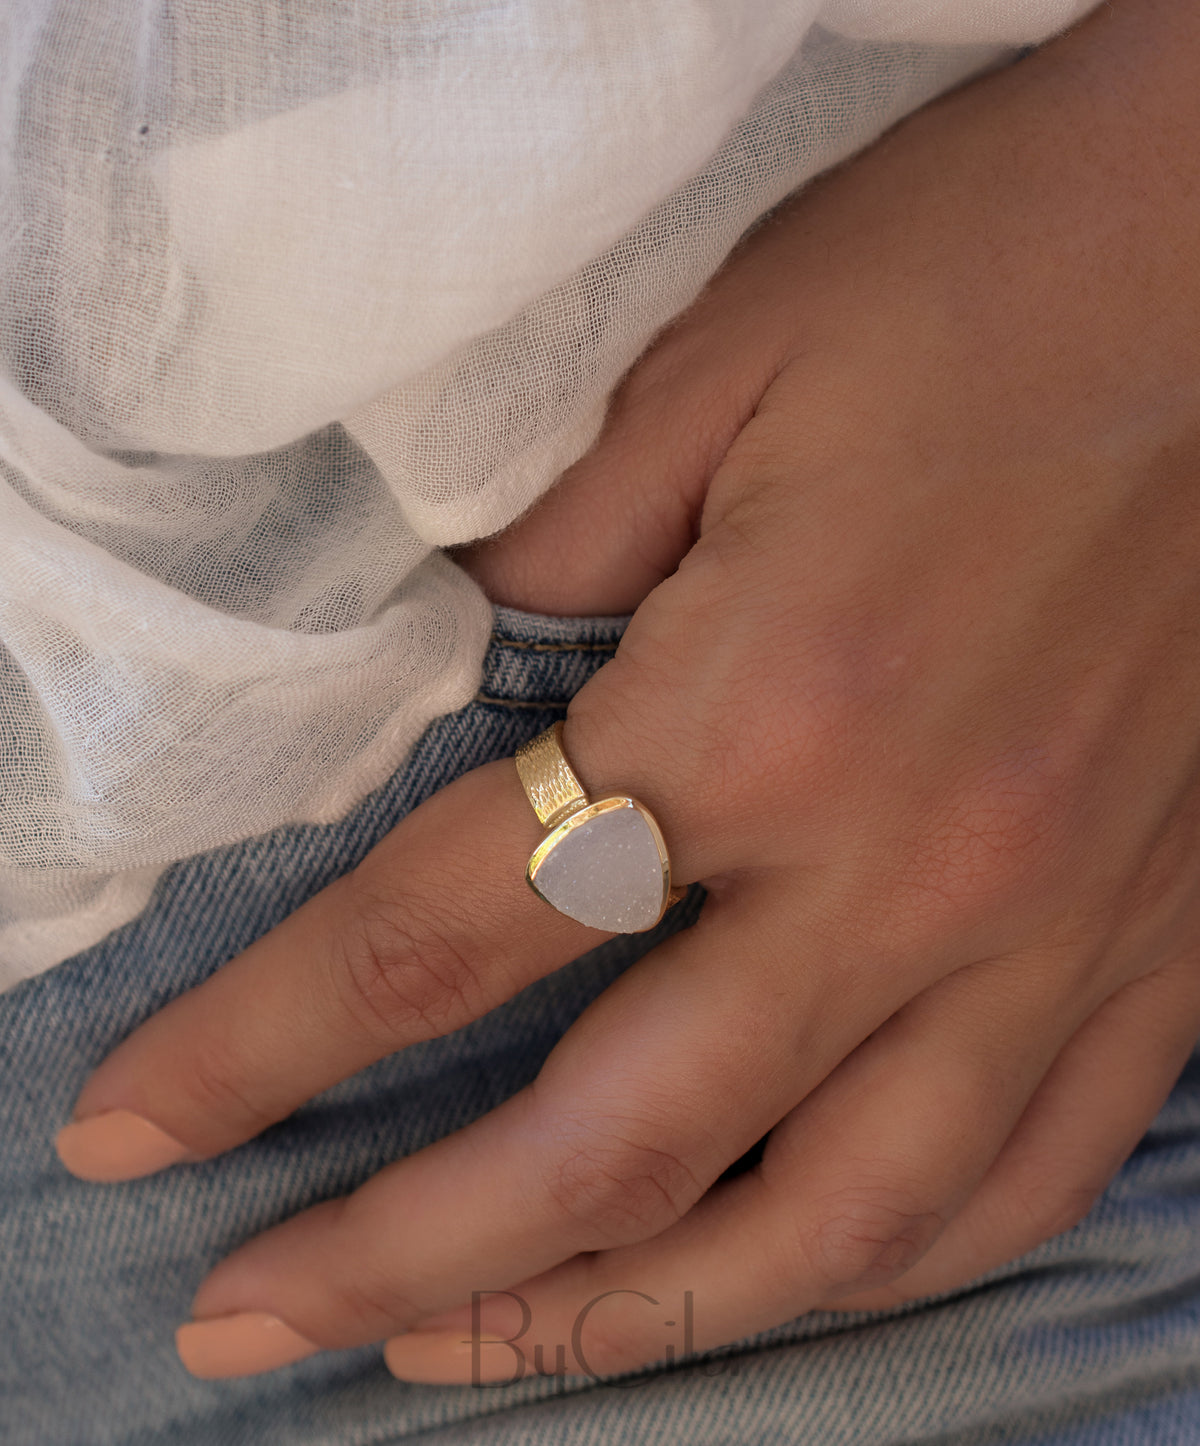 White Druzy Ring * Gold Plated Ring * Statement Ring *Gemstone Ring  *Gold Crystal* Natural Druzy *Large Gemstone *Organic Ring * BJR157